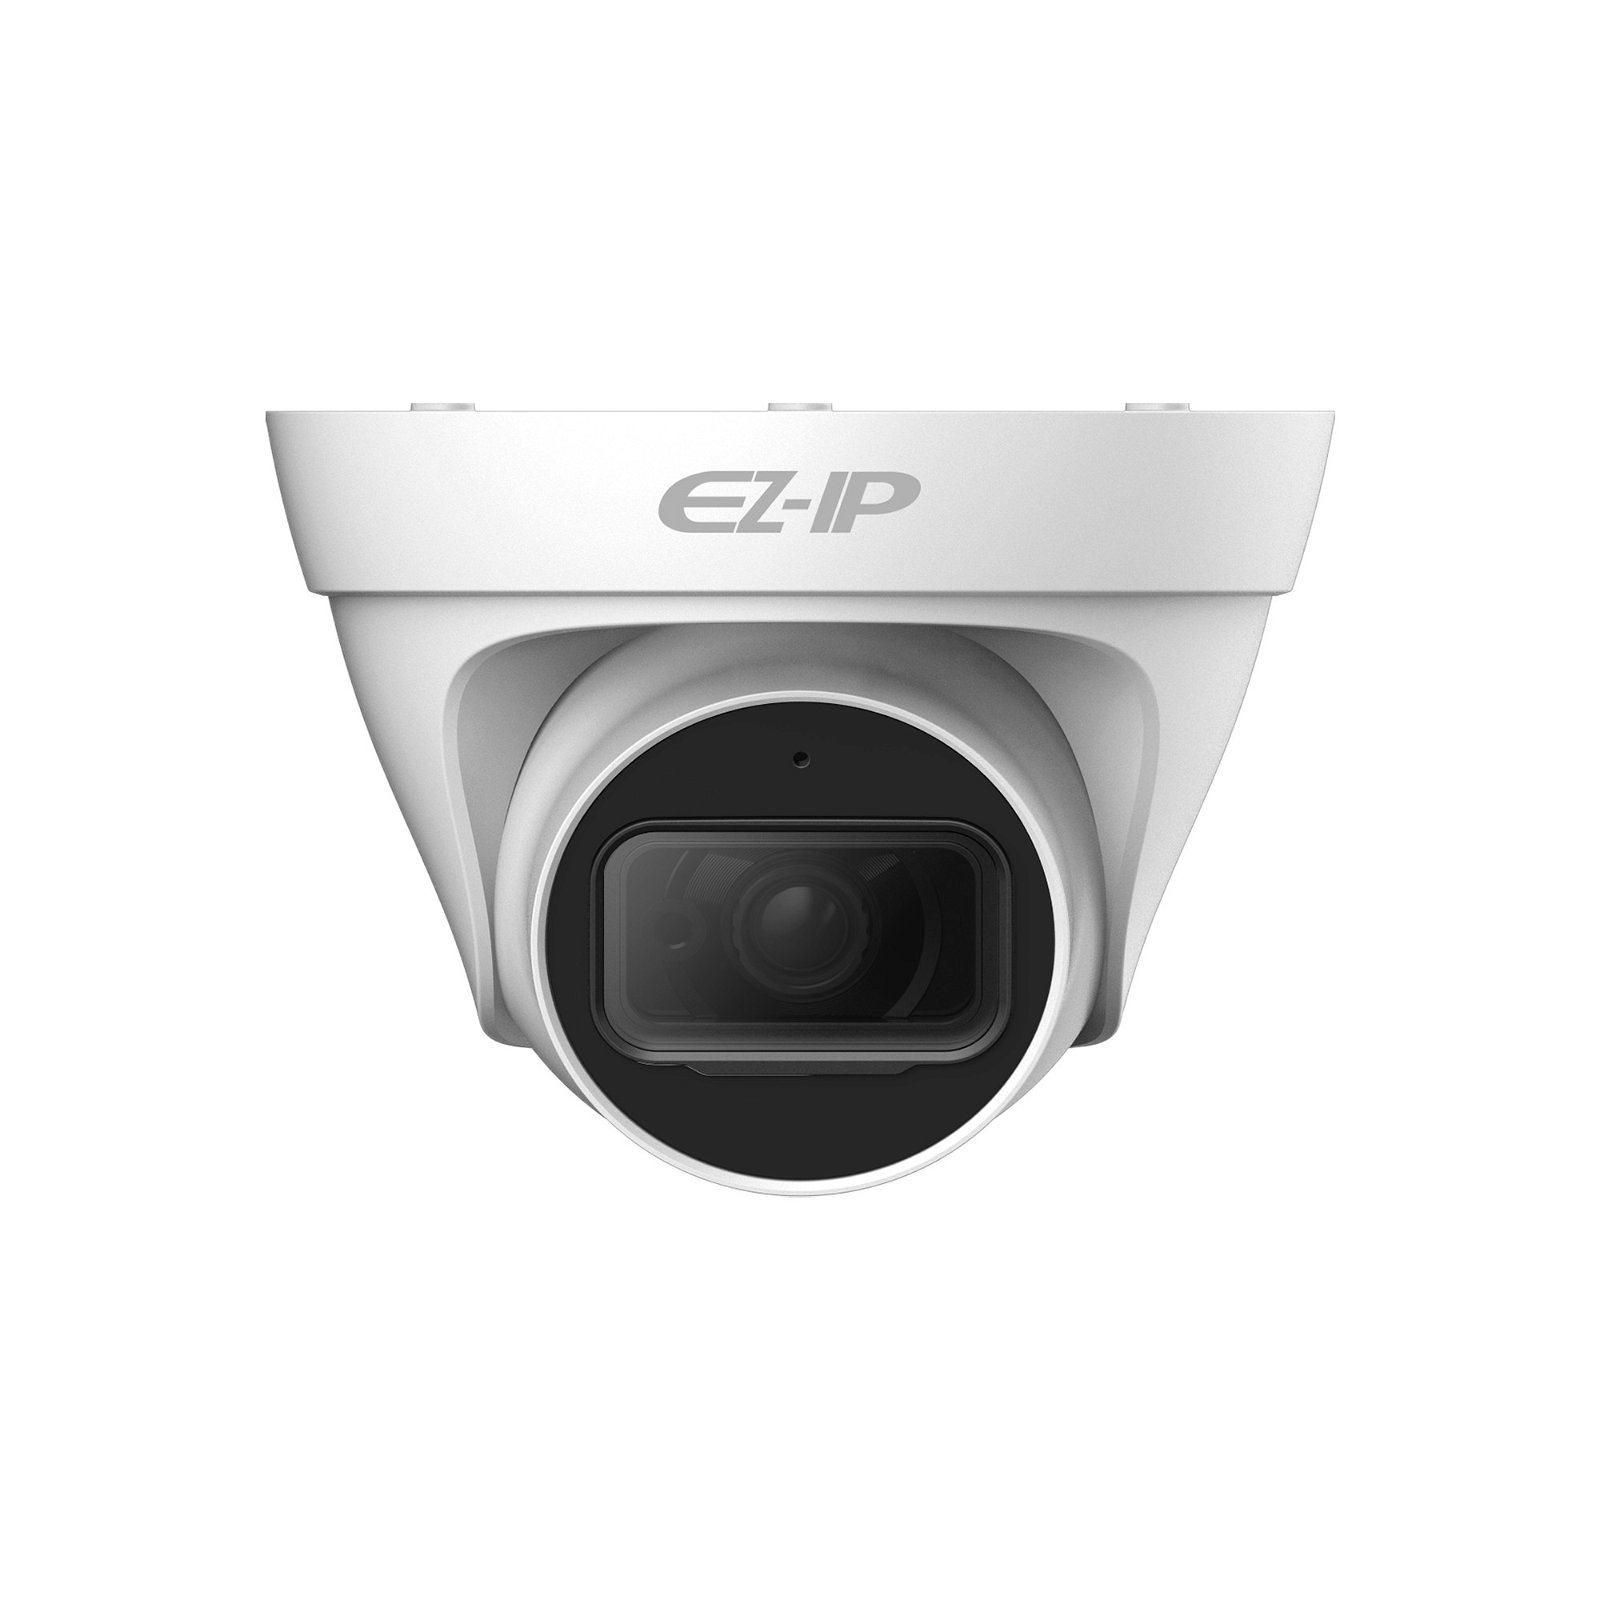 IP-Kamera Dahua EZ-IP IPC-T1B40P-0360B 4 Mpx, 3,6 mm, PoE